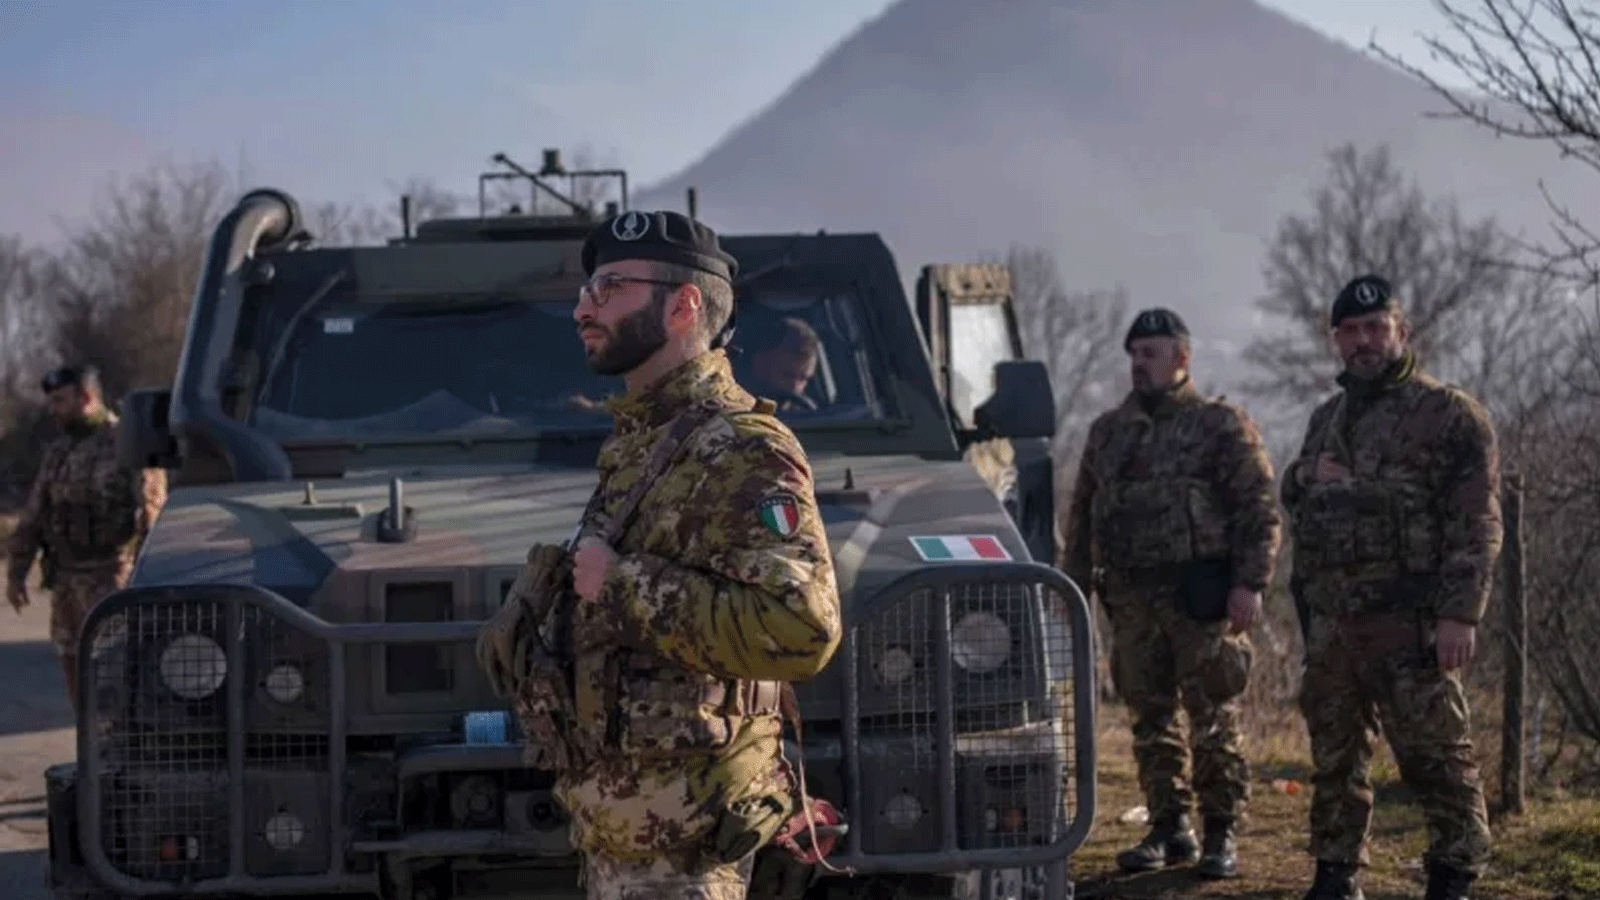 جنود إيطاليون يخدمون في بعثة حفظ سلام دولية يقودها الناتو في كوسوفو بالقرب من طريق يحاصره الصرب بالشاحنات في قرية روداري بالقرب من بلدة زفيكان في 26 كانون الأول\ديسمبر 2022